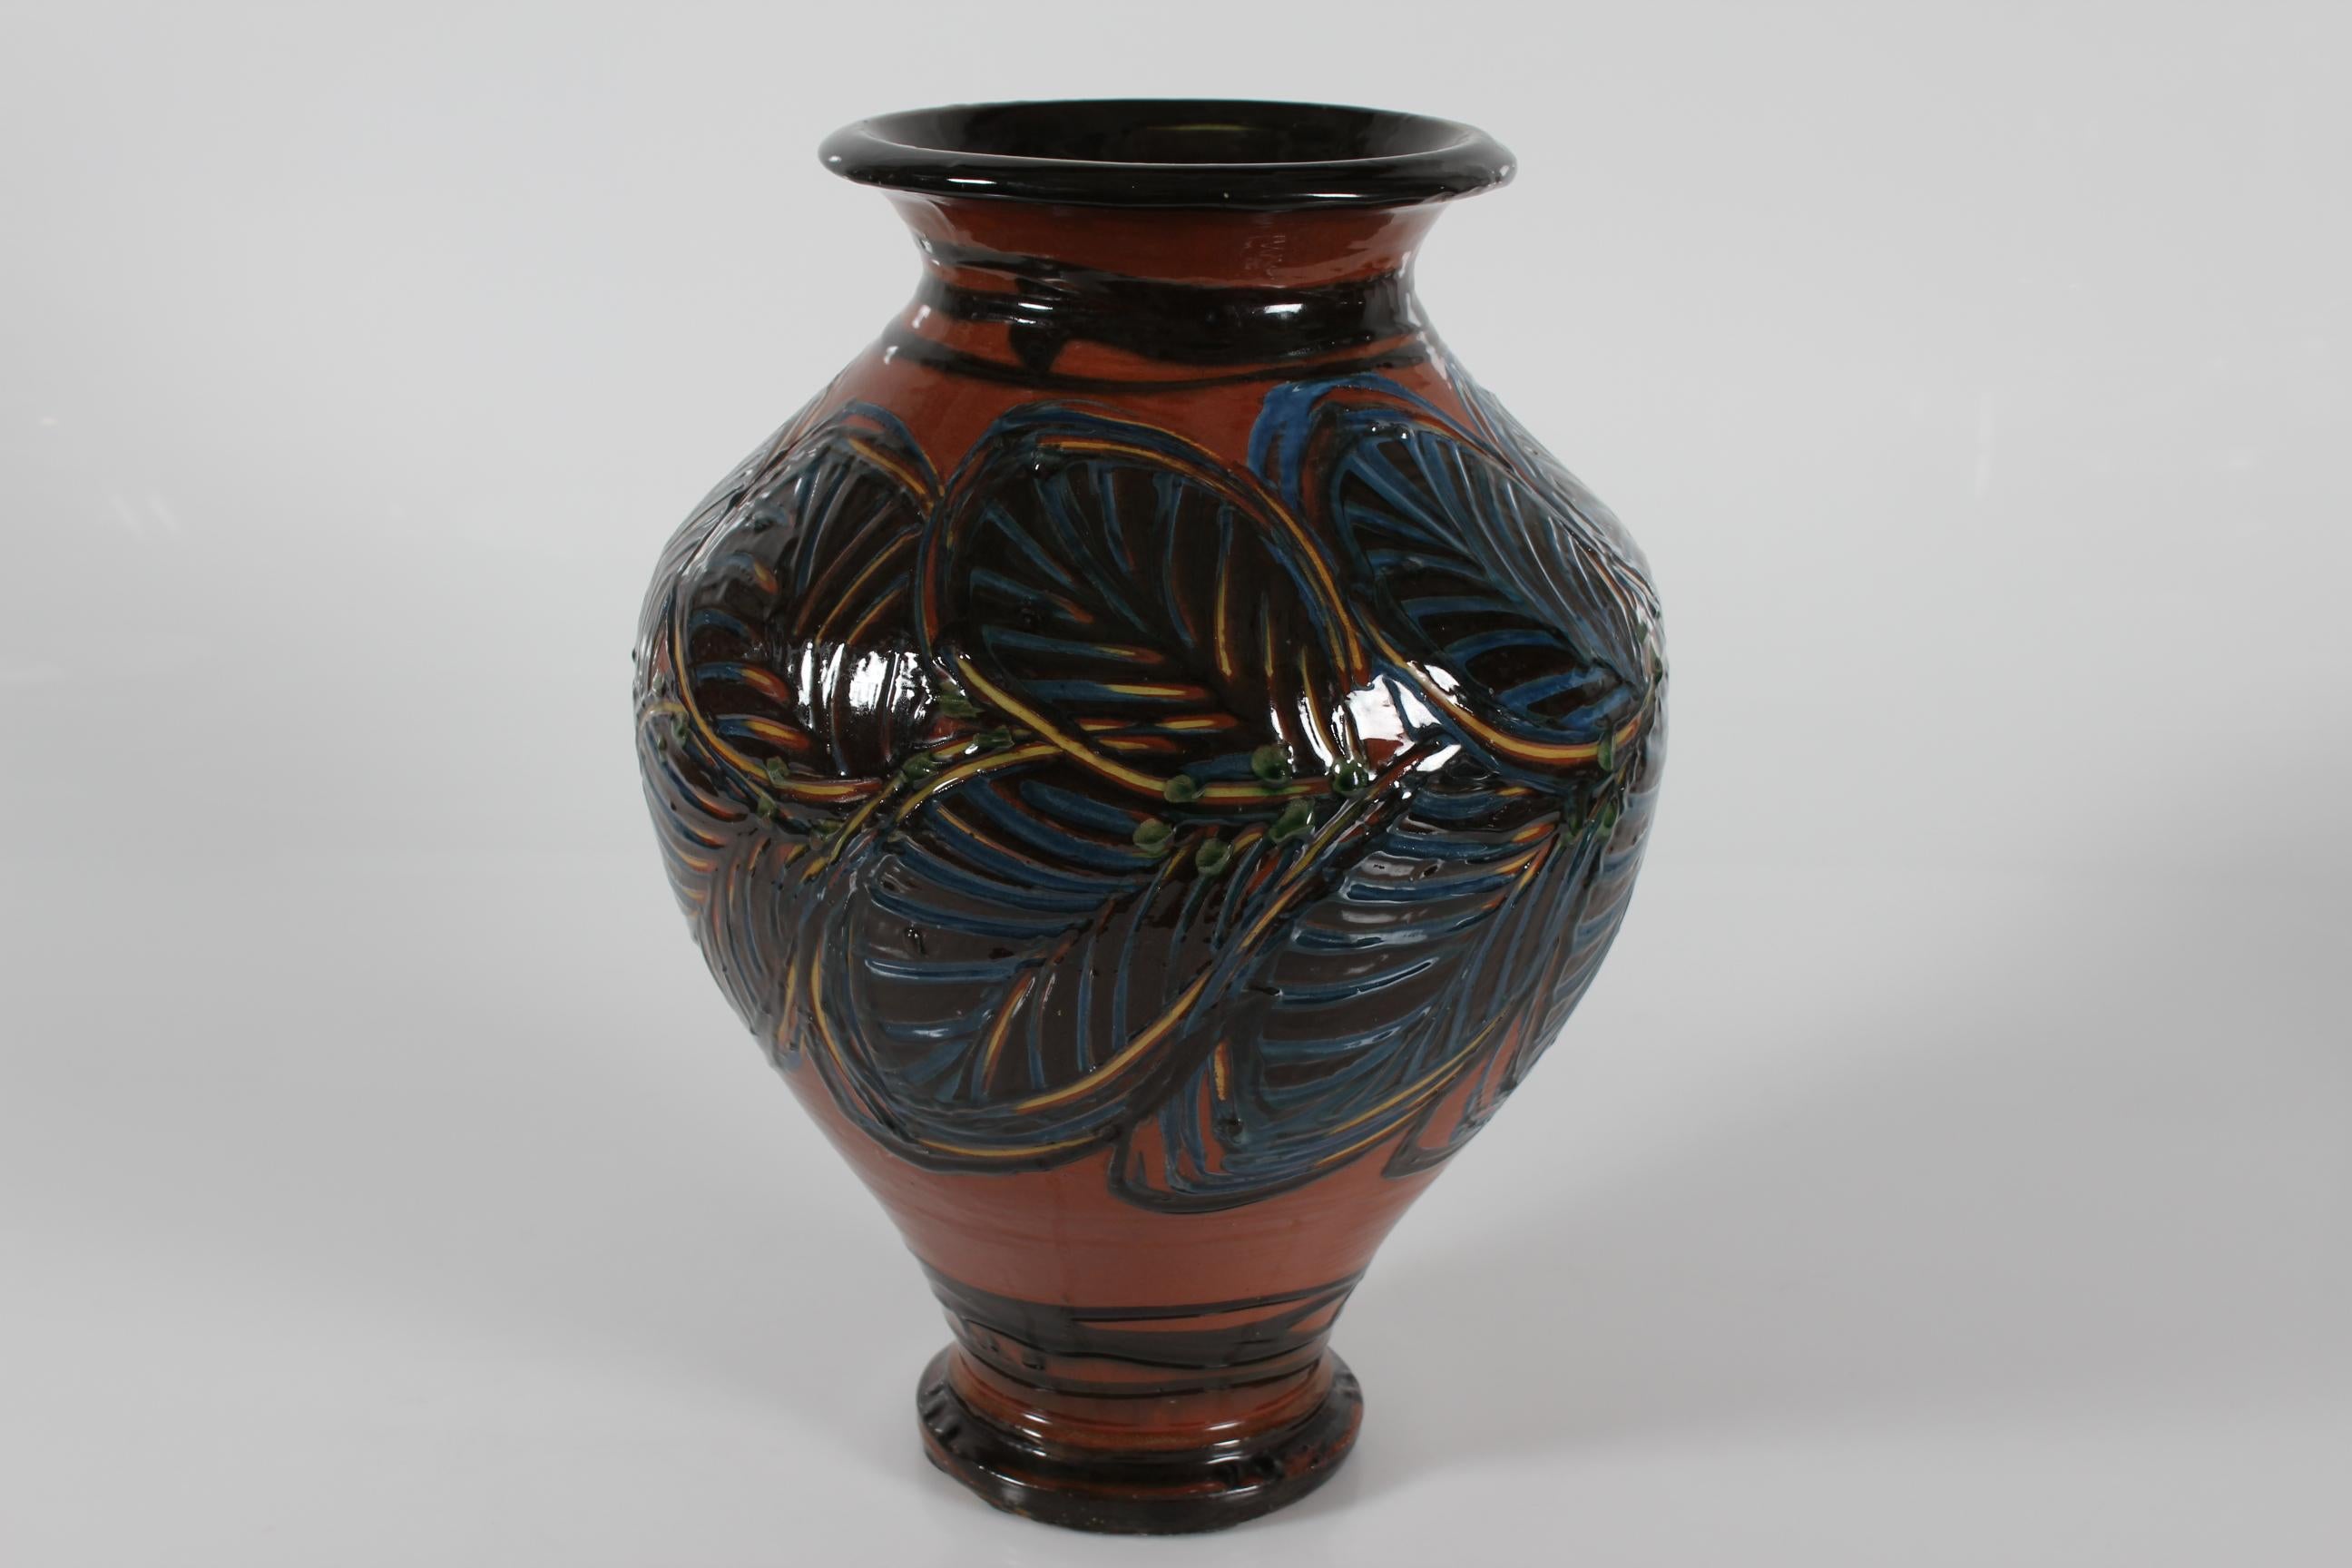 Grand vase de sol en céramique Art nouveau réalisé par Herman A. Kähler ceramic works au Danemark dans la période 1925-1935
Le vase est décoré de feuilles à la main avec la technique spéciale de la corne de vache. 
La glaçure est bleu foncé, brun